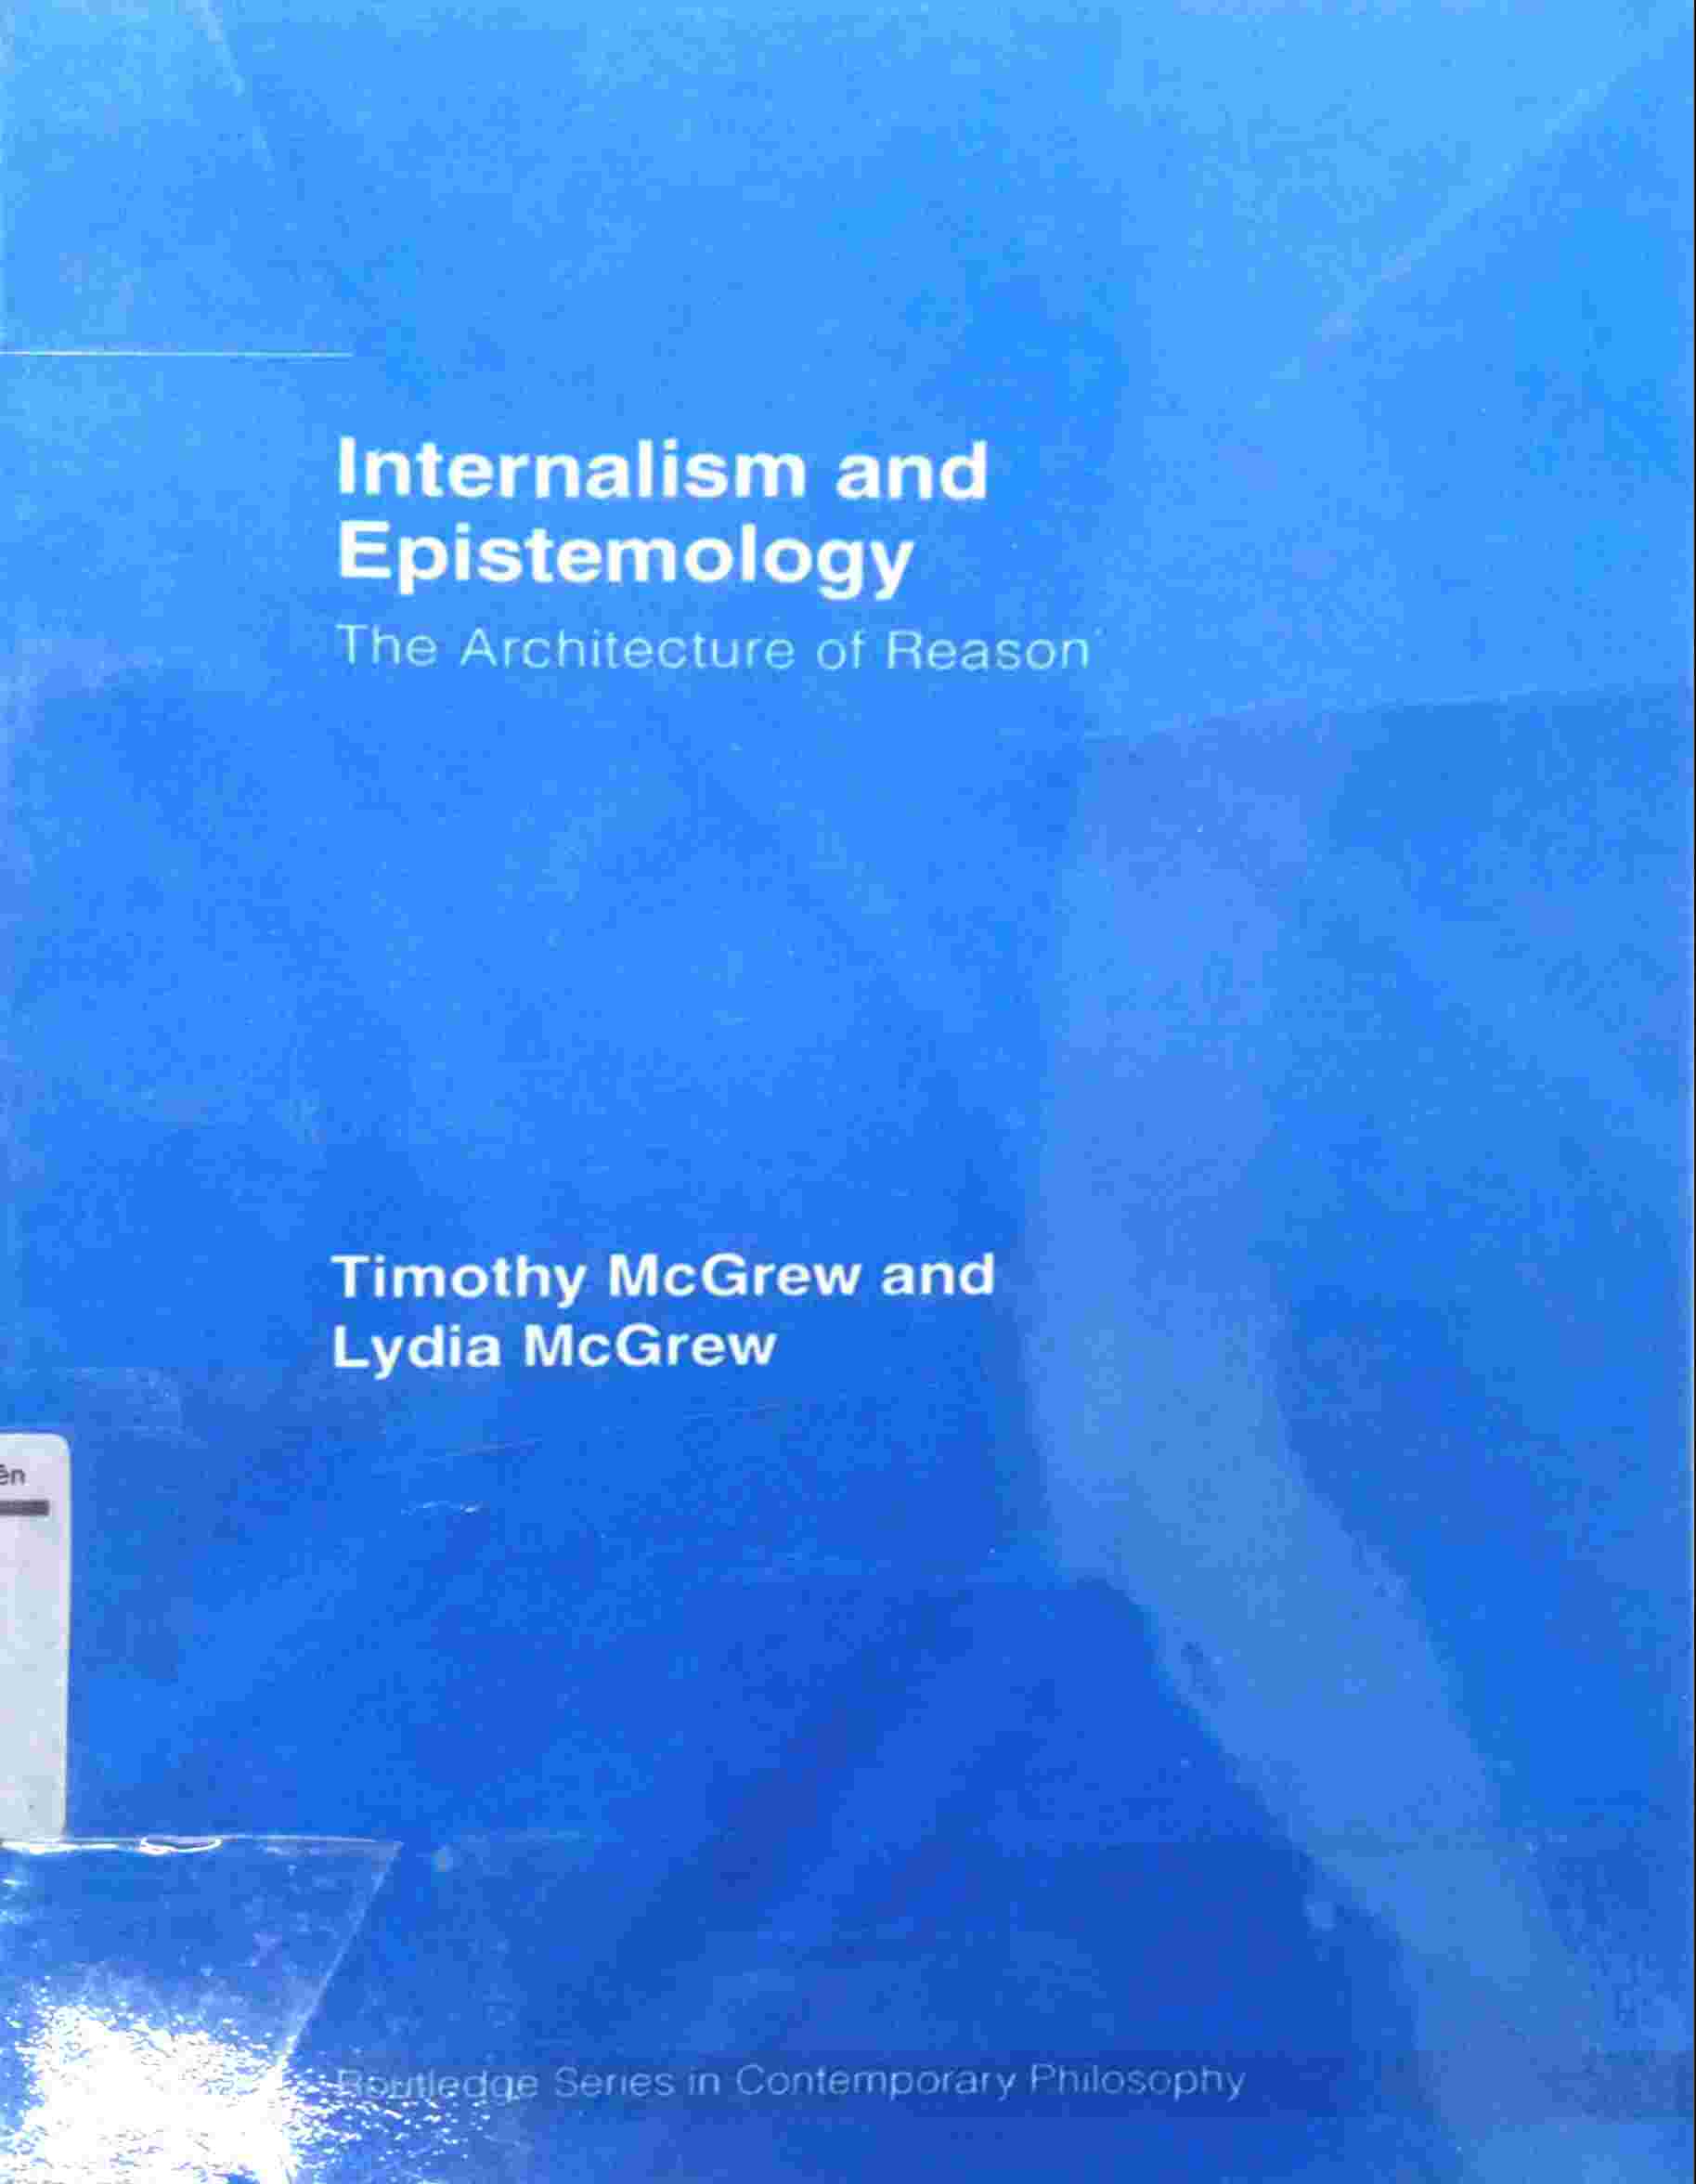 INTERNALISM AND EPISTEMOLOGY